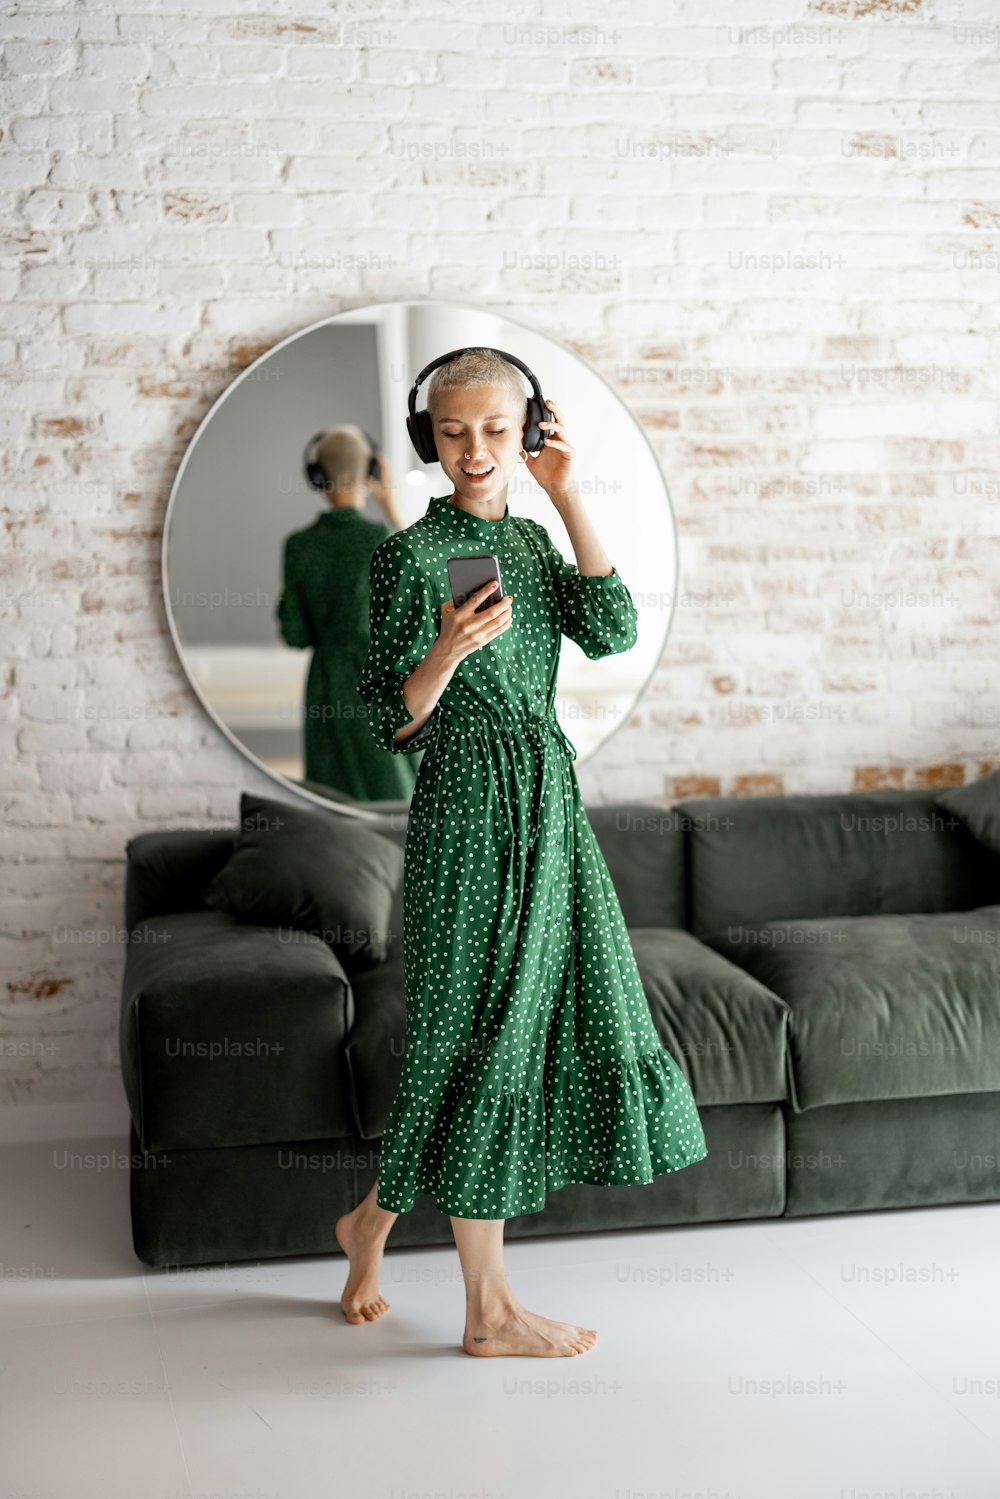 초록색 드레스를 입은 세련된 여성은 집 거실에서 헤드폰과 휴대폰 춤을 추며 음악을 즐긴다